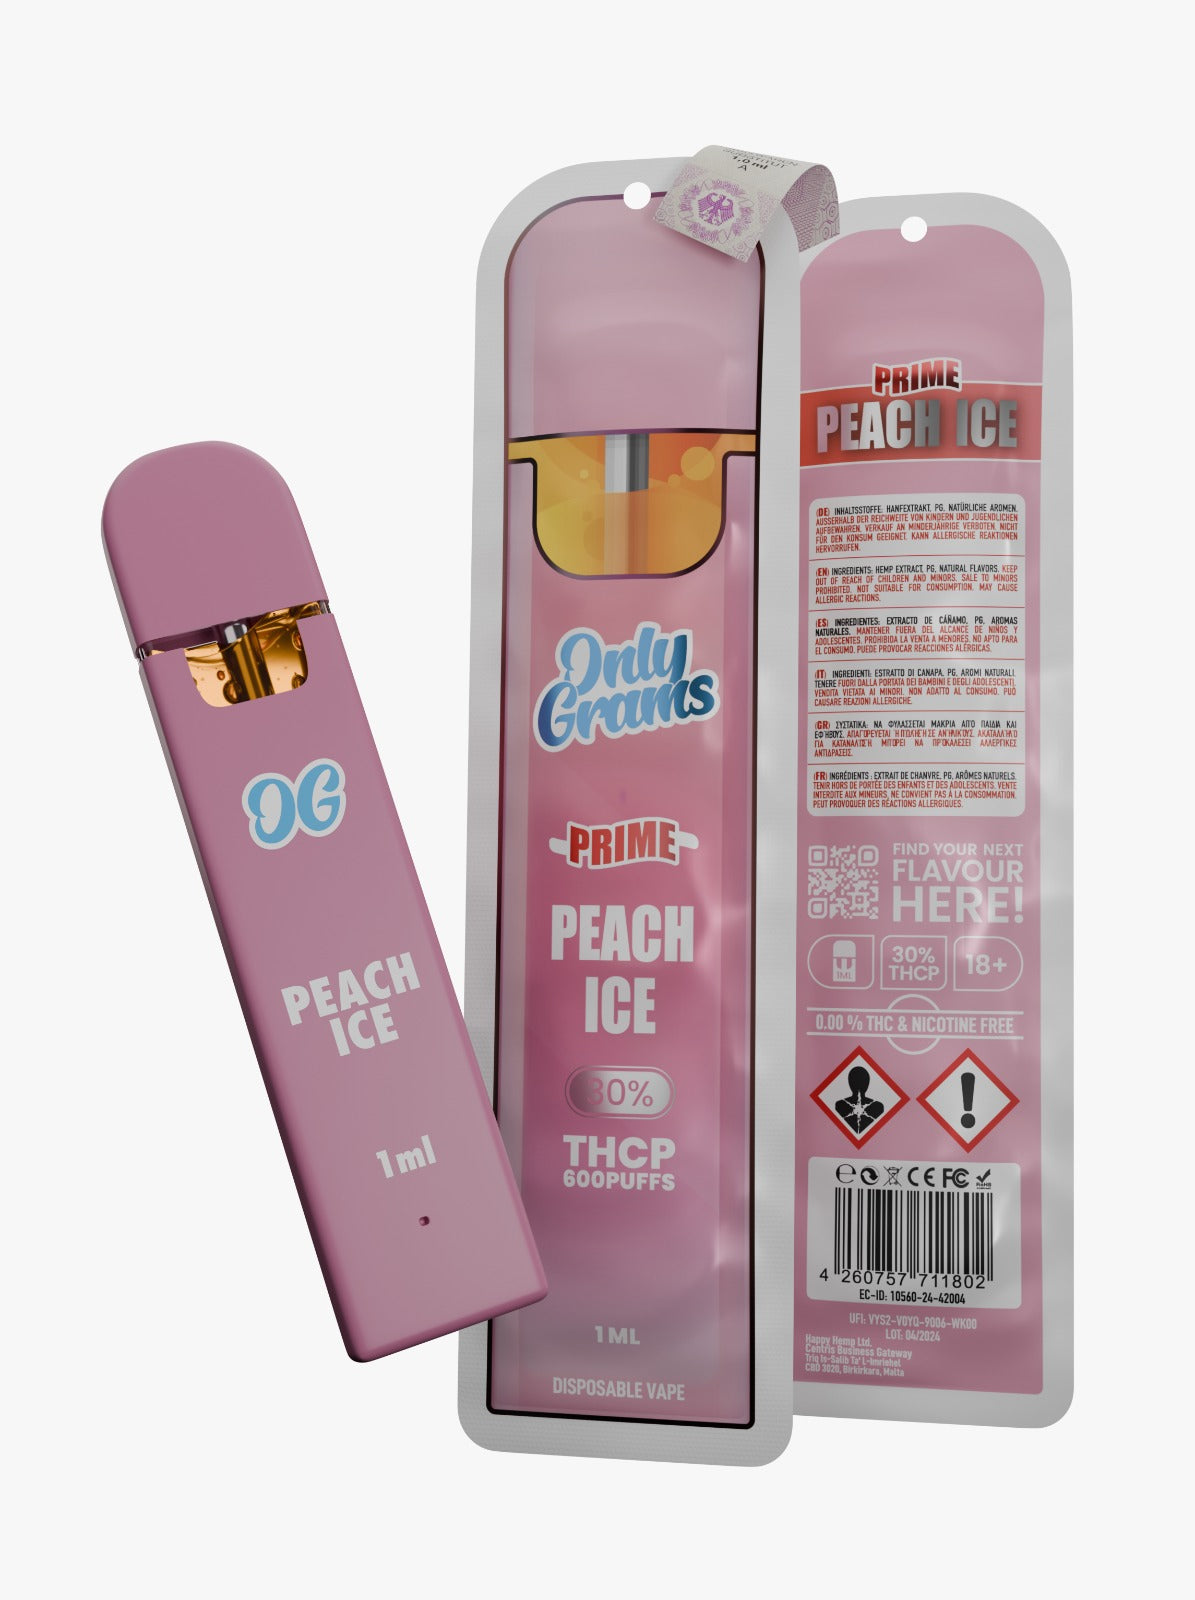 OnlyGrams Peach Ice (H) THCP 30% Vape